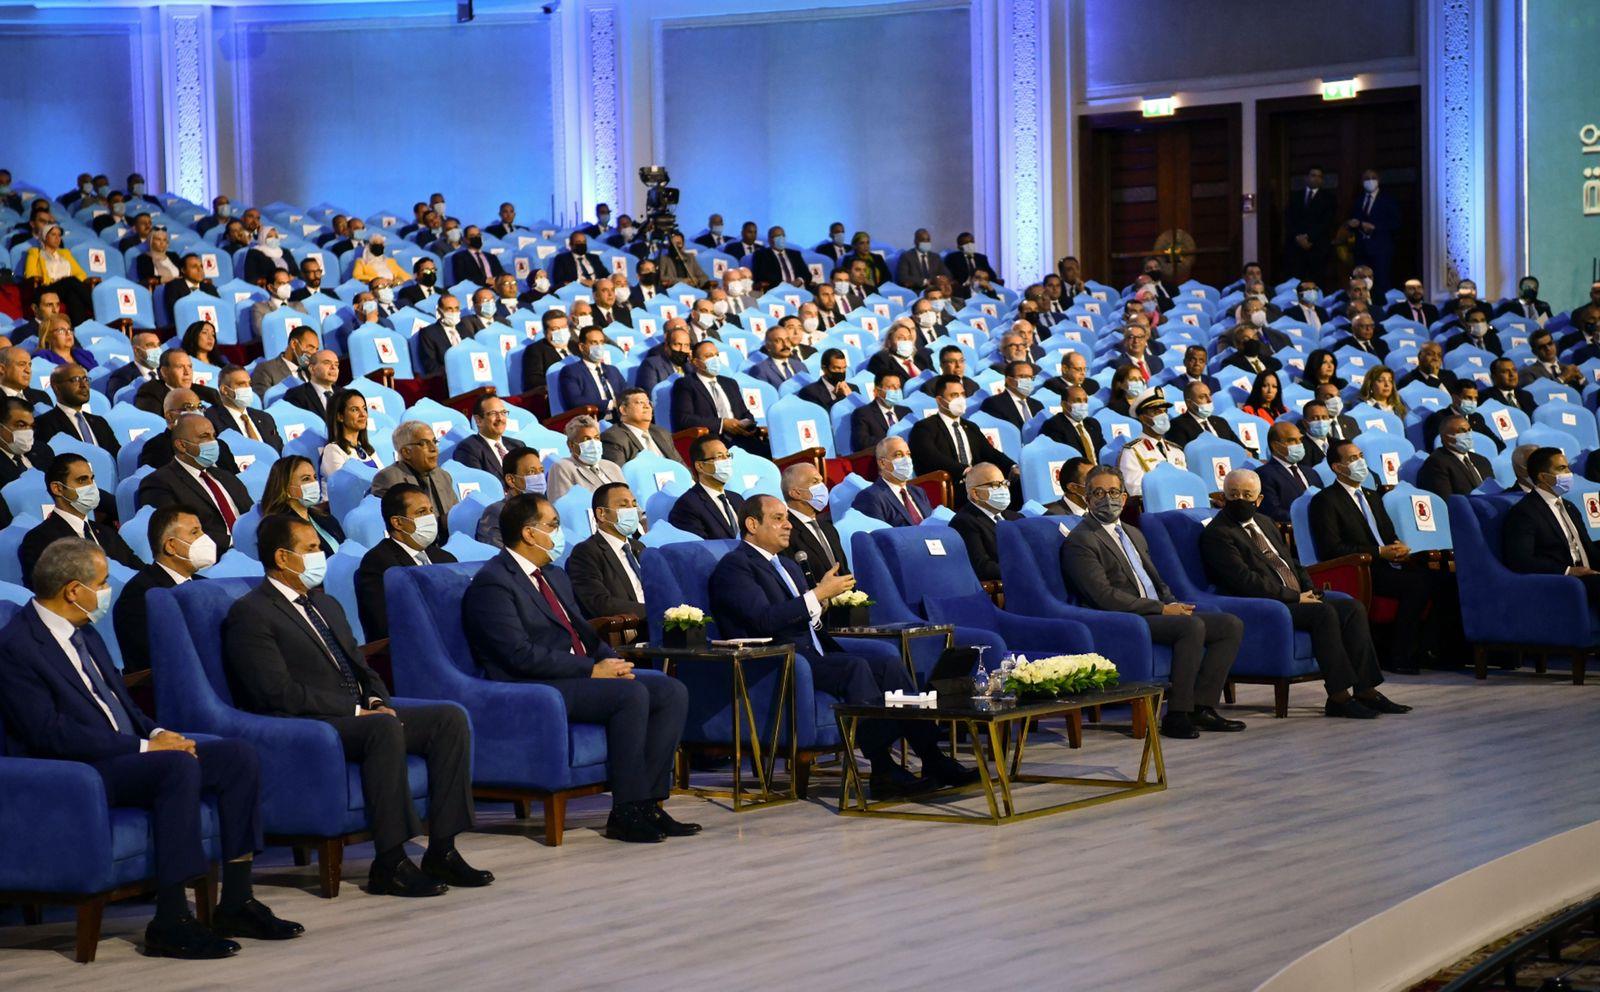 المتحدث الرسمي ينشر صوراً لافتتاح الرئيس عدد من المشروعات وإطلاق منصة مصر الرقمية